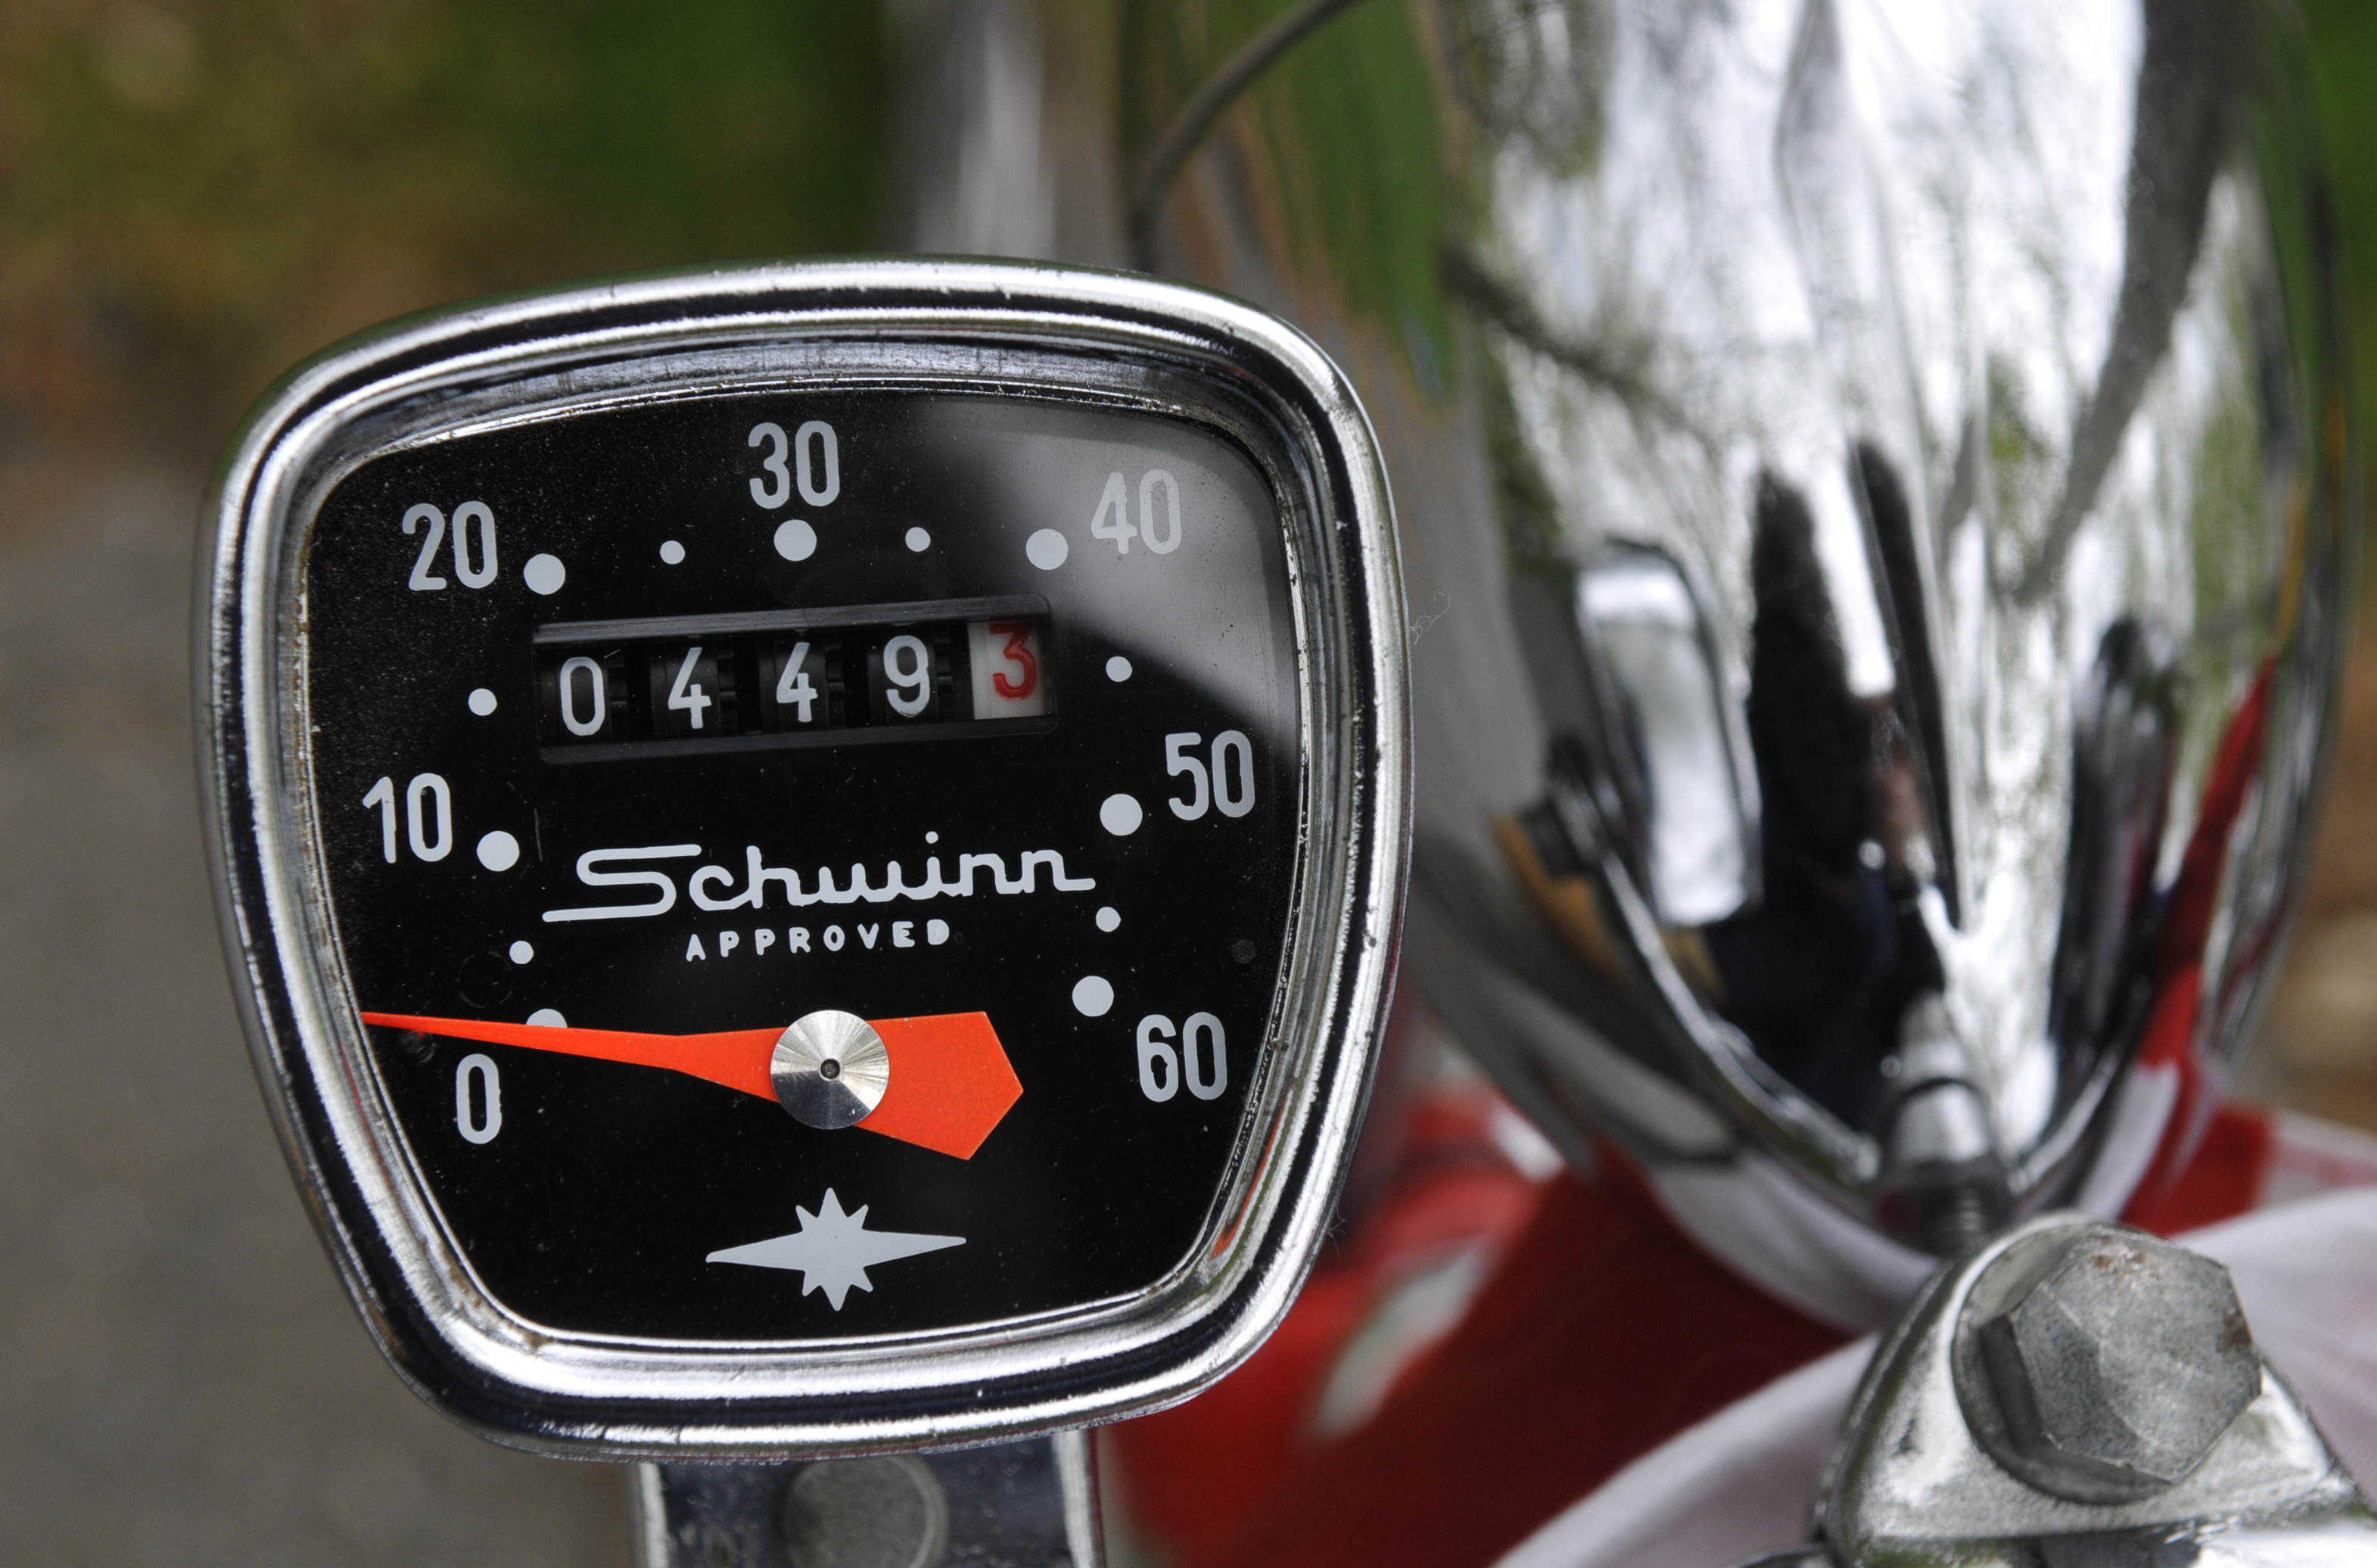 A Schwinn bike